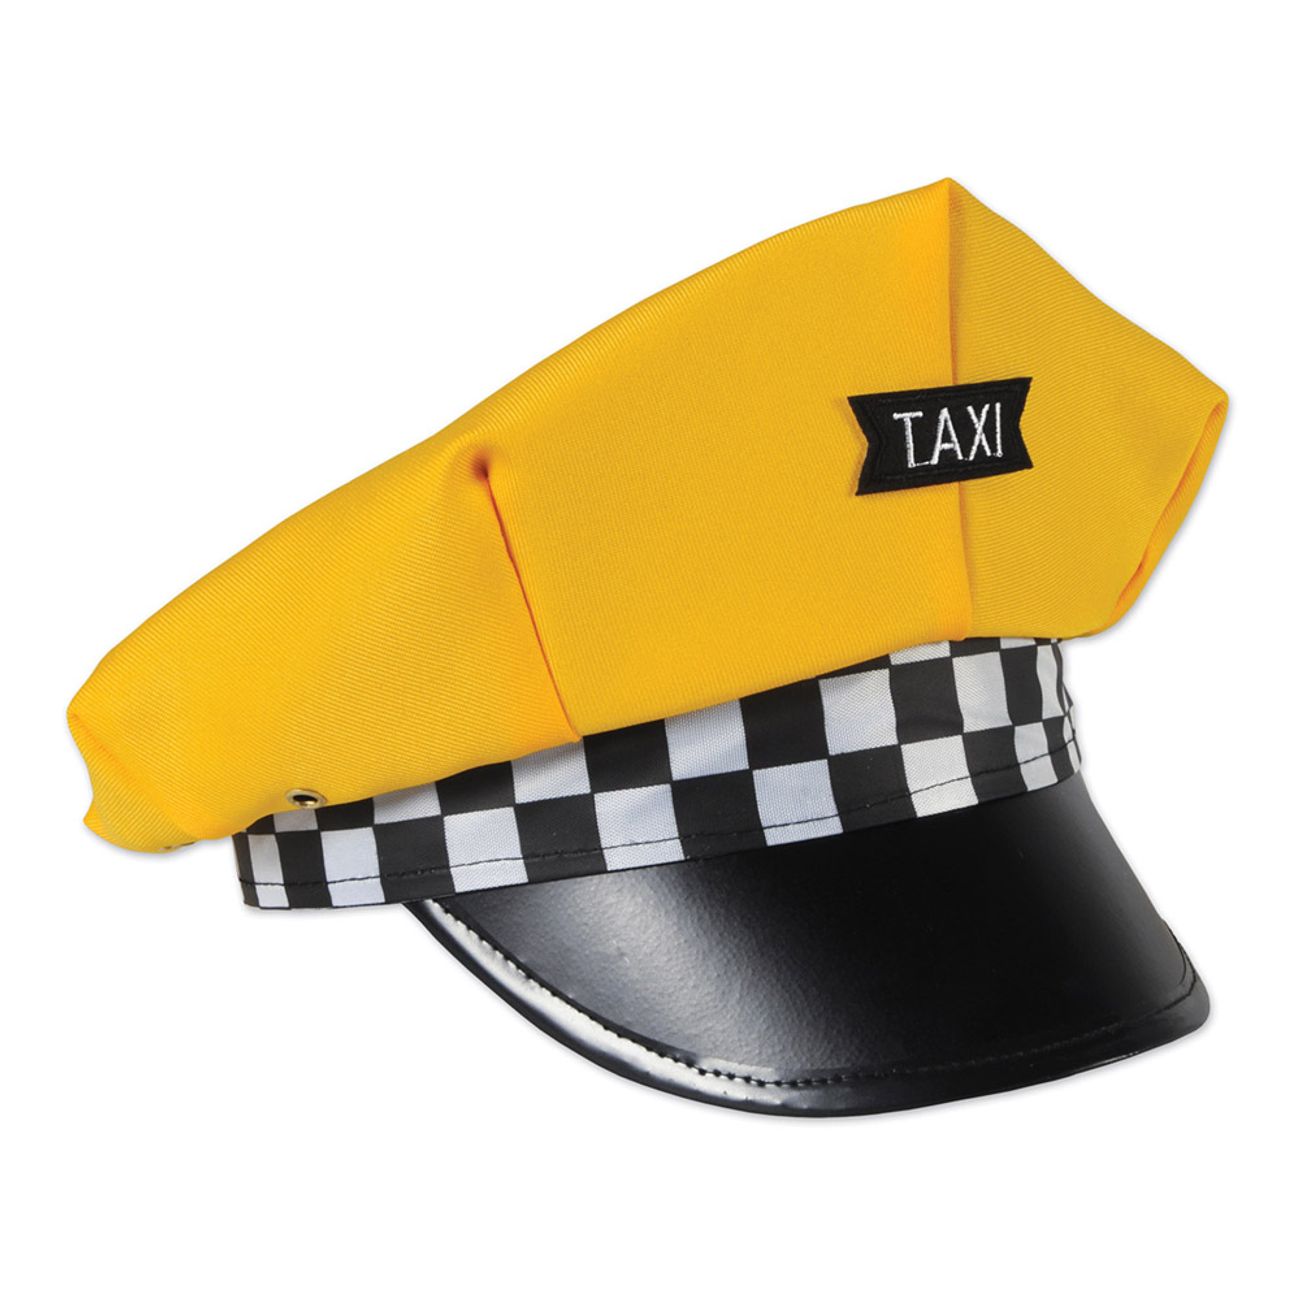 taxikeps-klassisk-gul-1